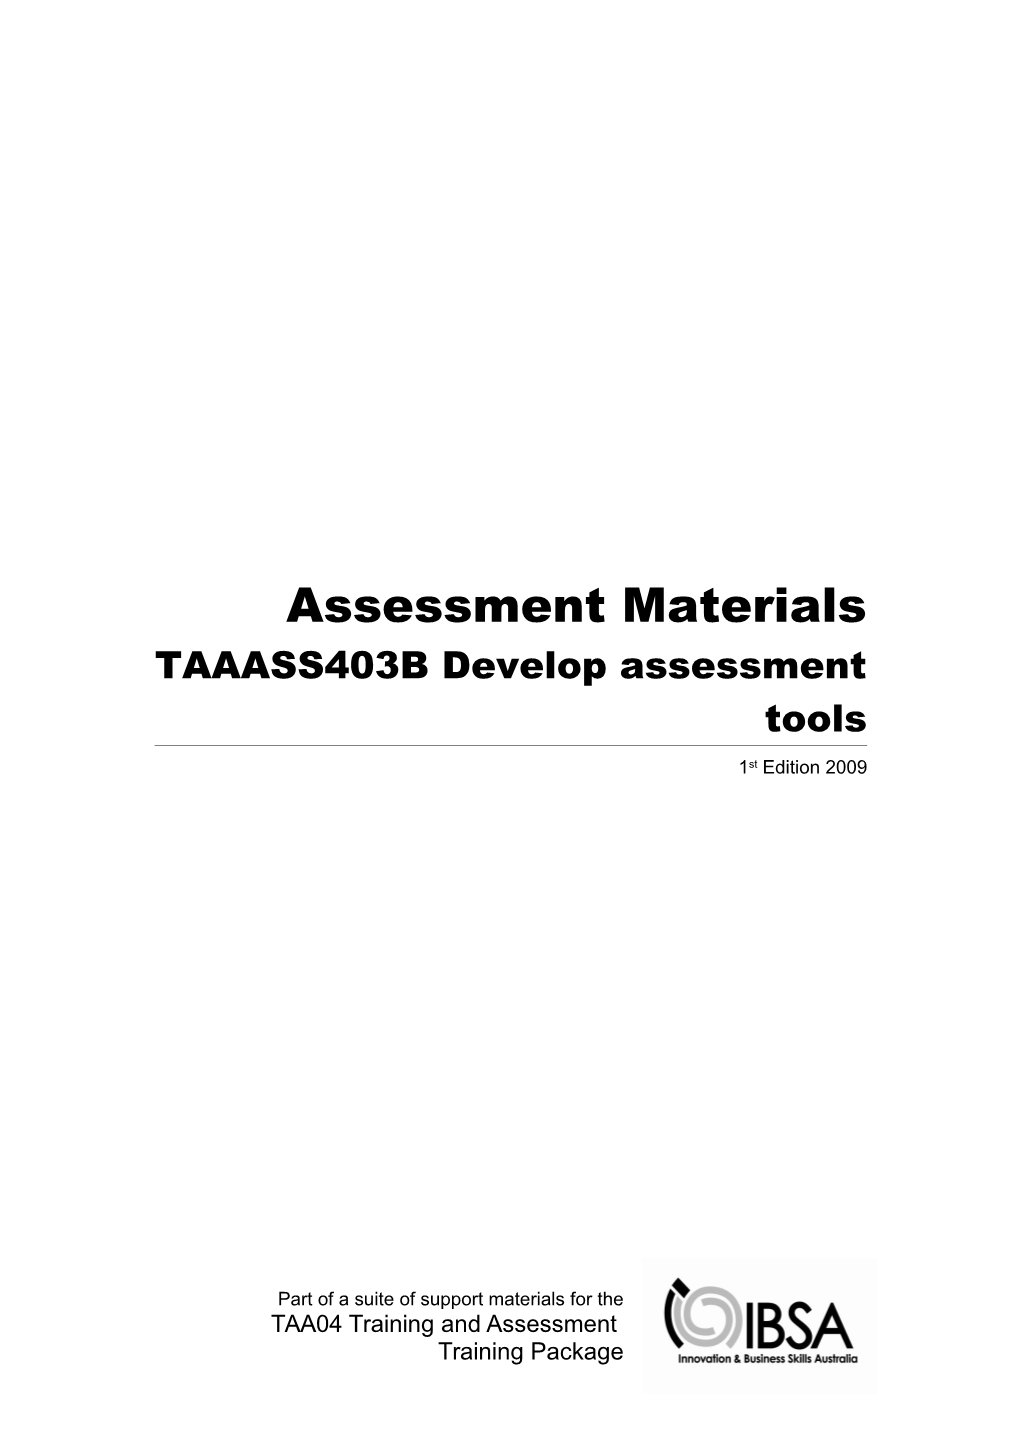 Assessment Materials TAAASS403B Develop Assessment Tools